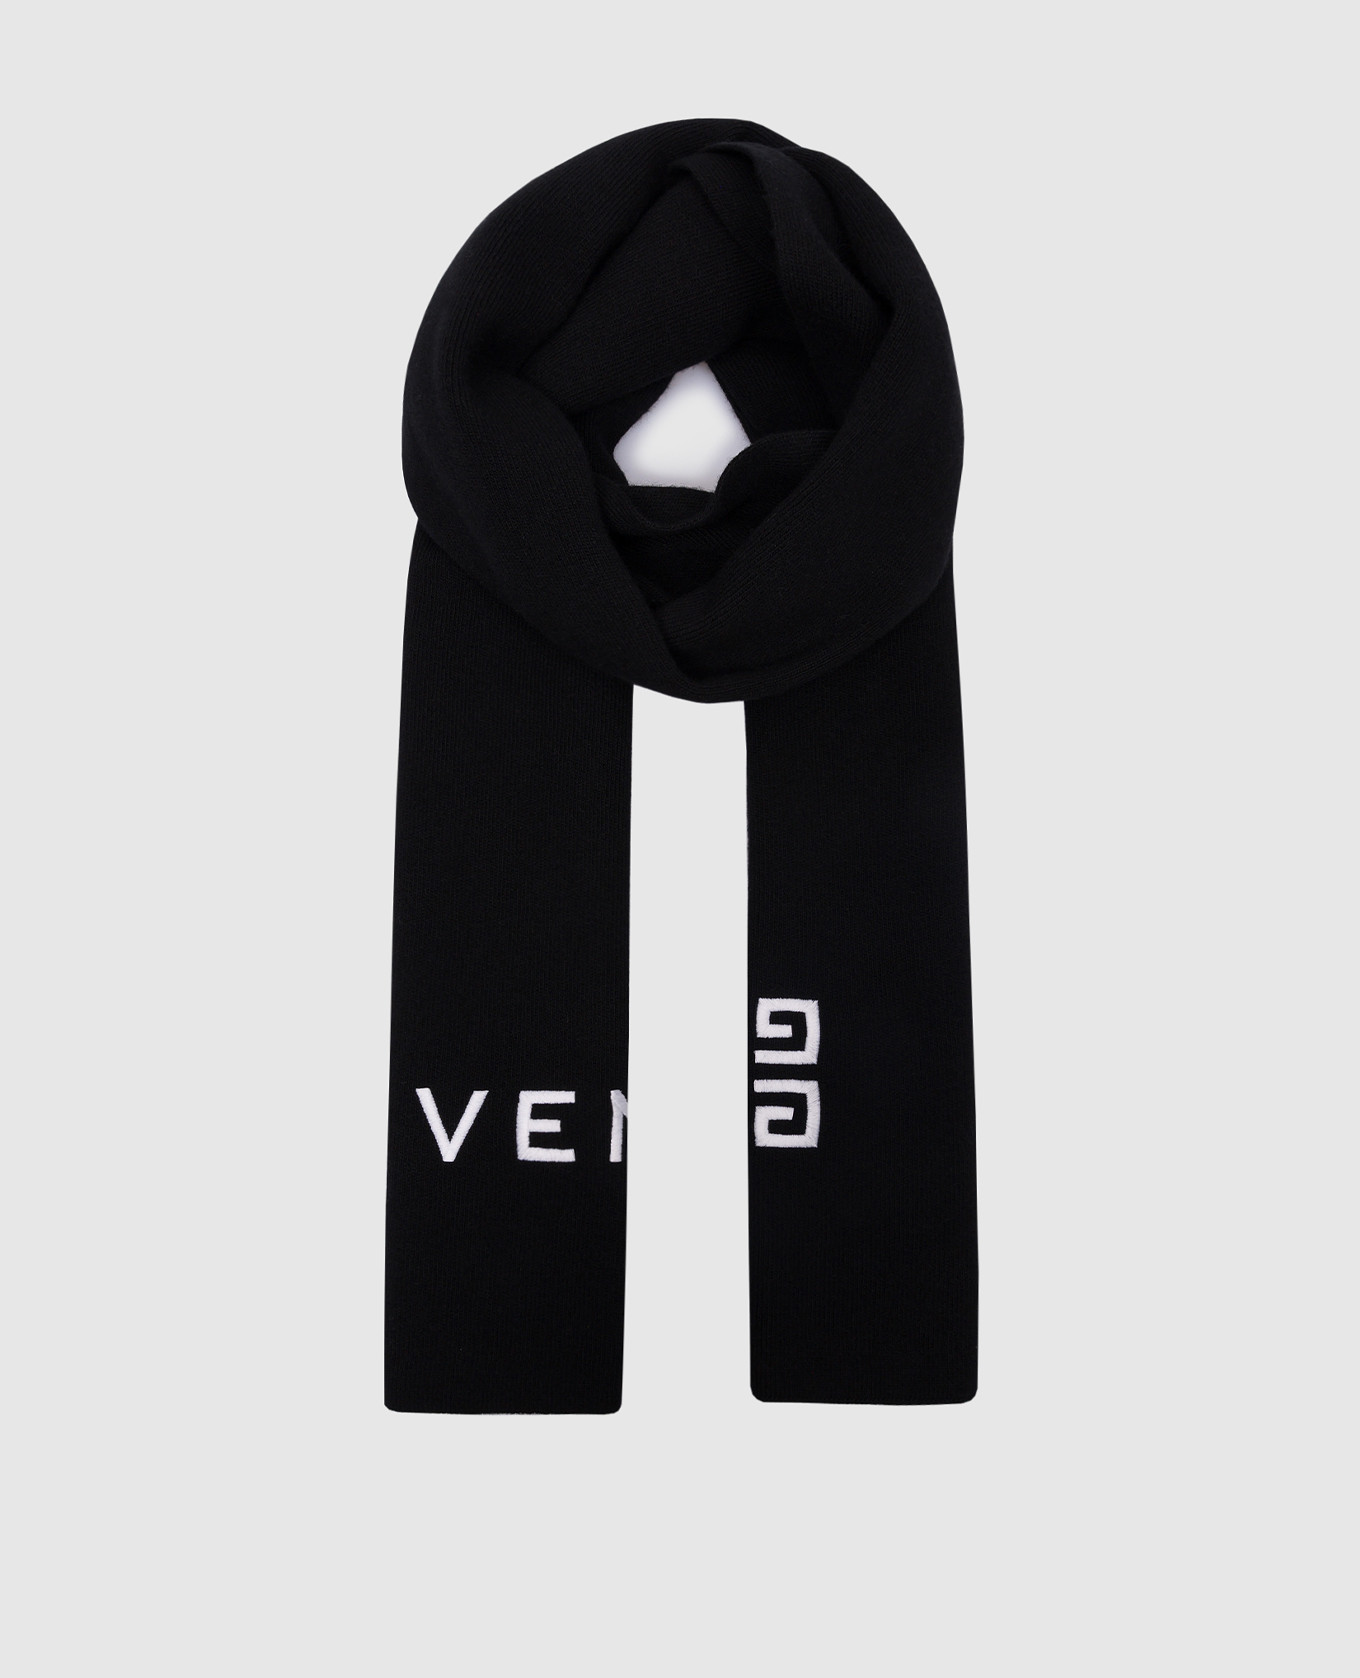 Черный шарф из шерсти и кашемира с контрастной вышивкой логотипа